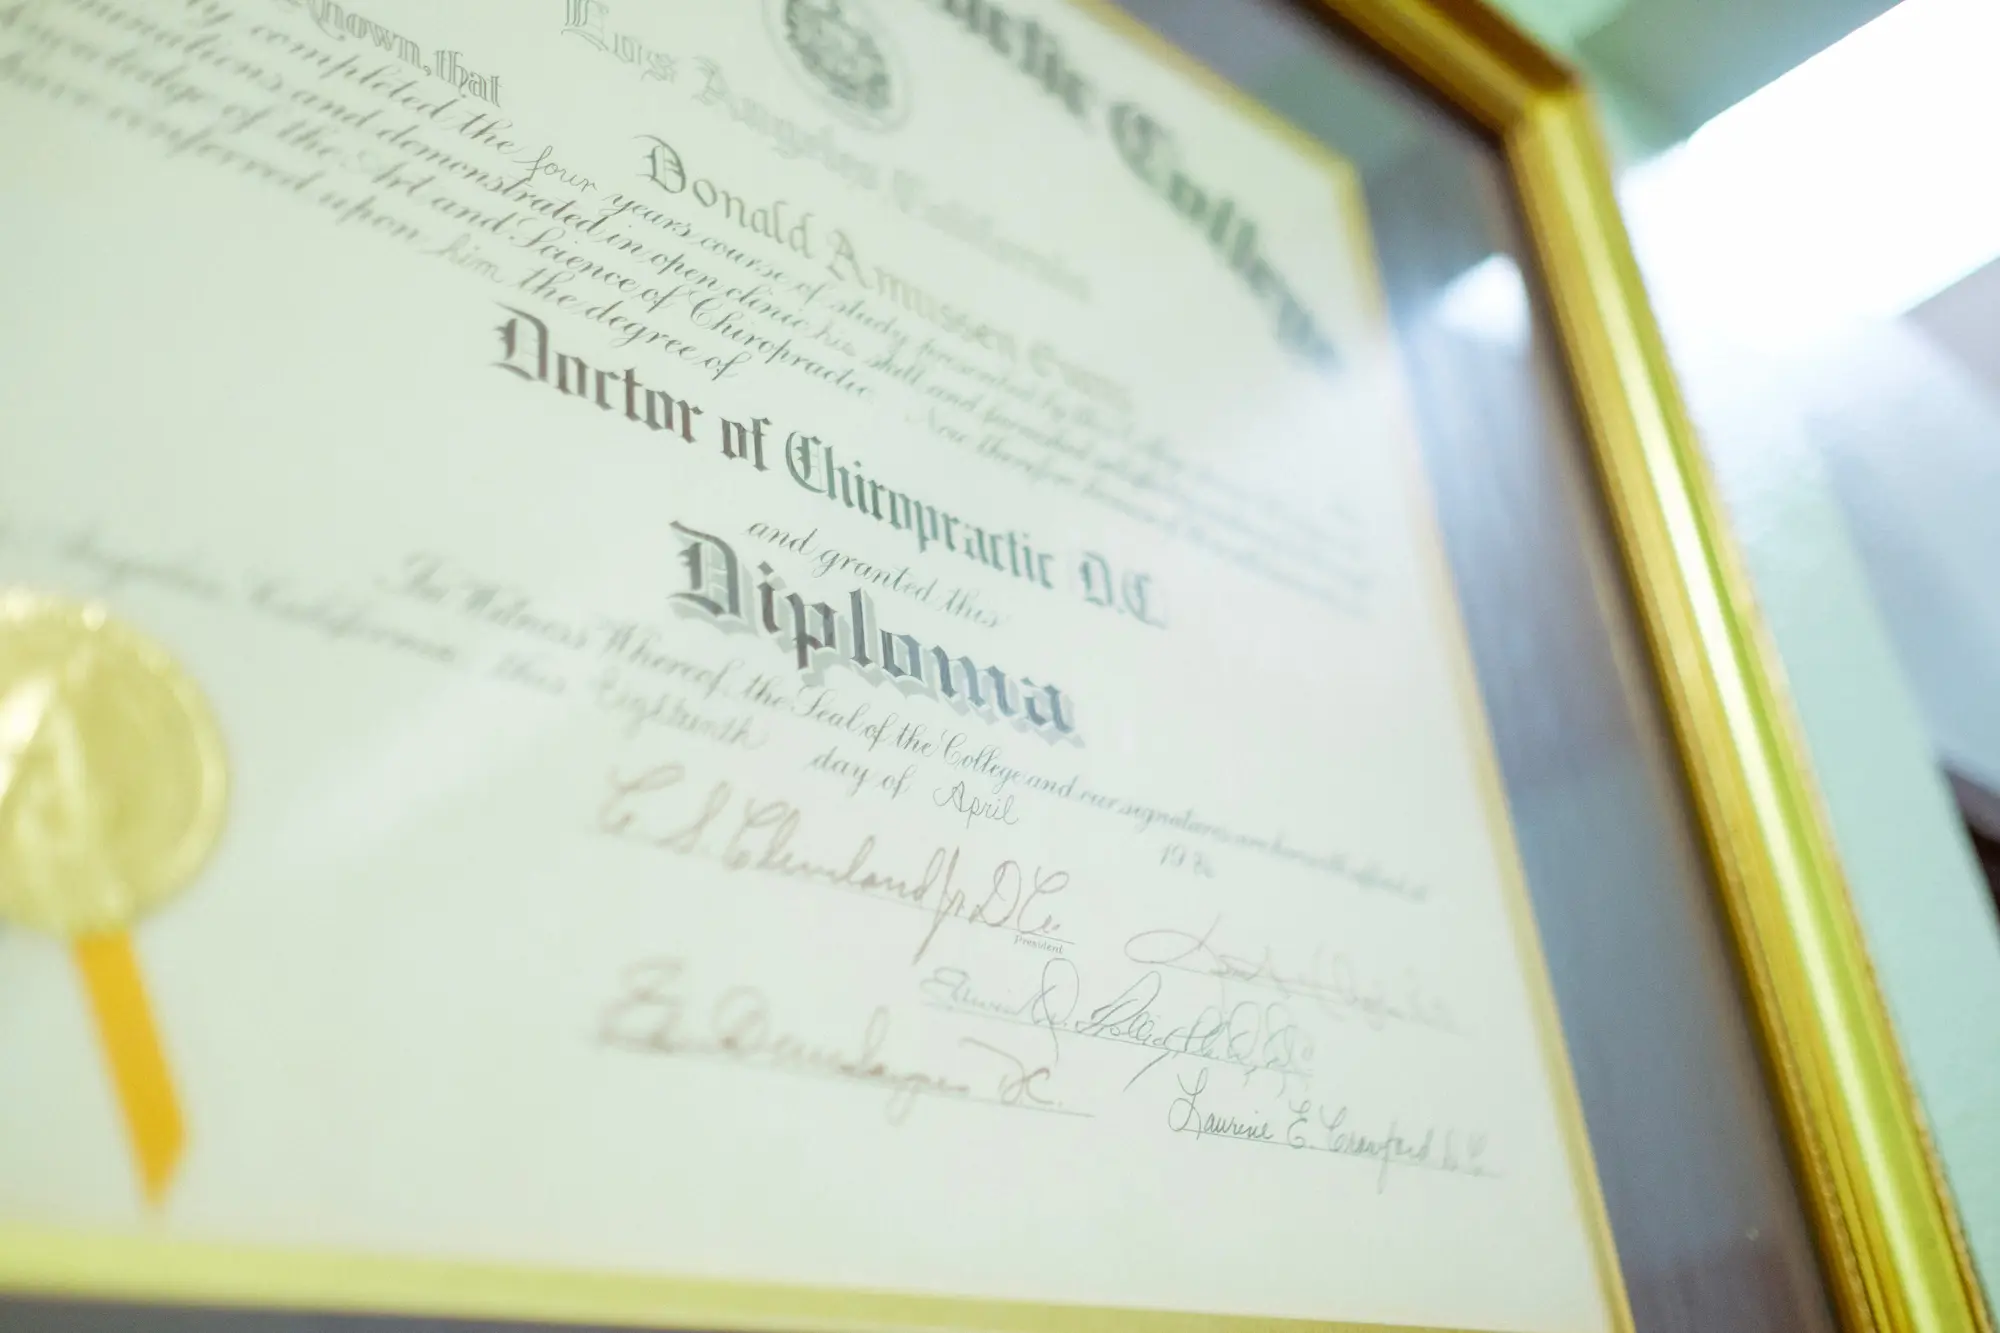 Diploma - certificado de profesionalidad - CertificadoElectronico.es